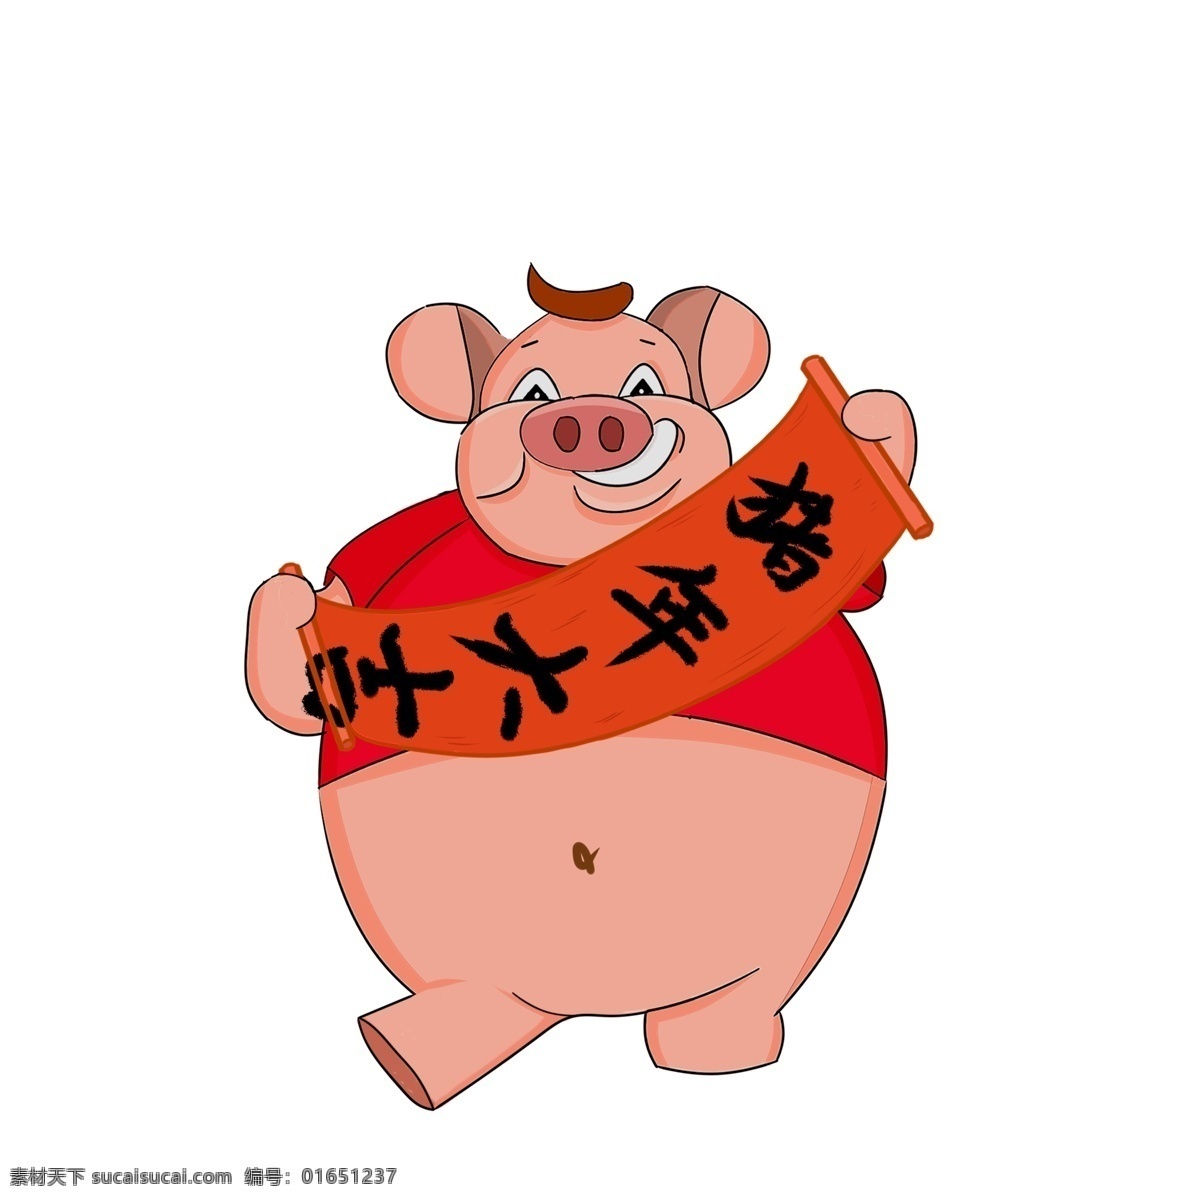 猪年 大吉 对联 小 猪 商用 元素 卡通 喜庆 中国风 春节 插画 手绘 潮漫 猪年大吉 小猪 新春 新年 2019年 小猪形象 猪年形象